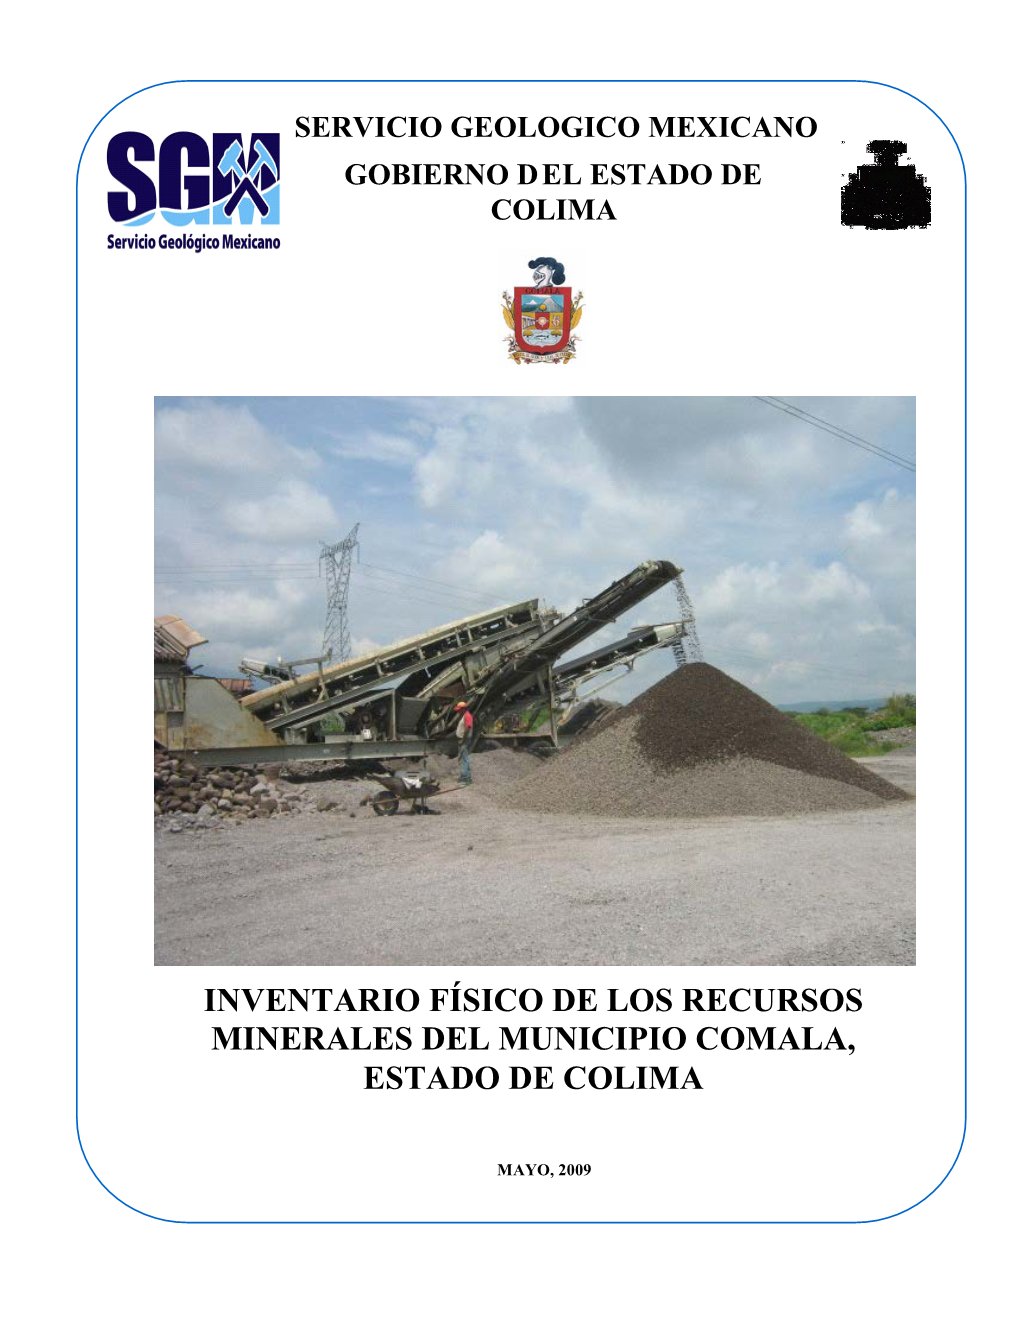 Inventario De Los Recursos Minerales De Los Municipios Colima, Coquimatlan, Minatitlan Y Tecoman En El Estado De Colima